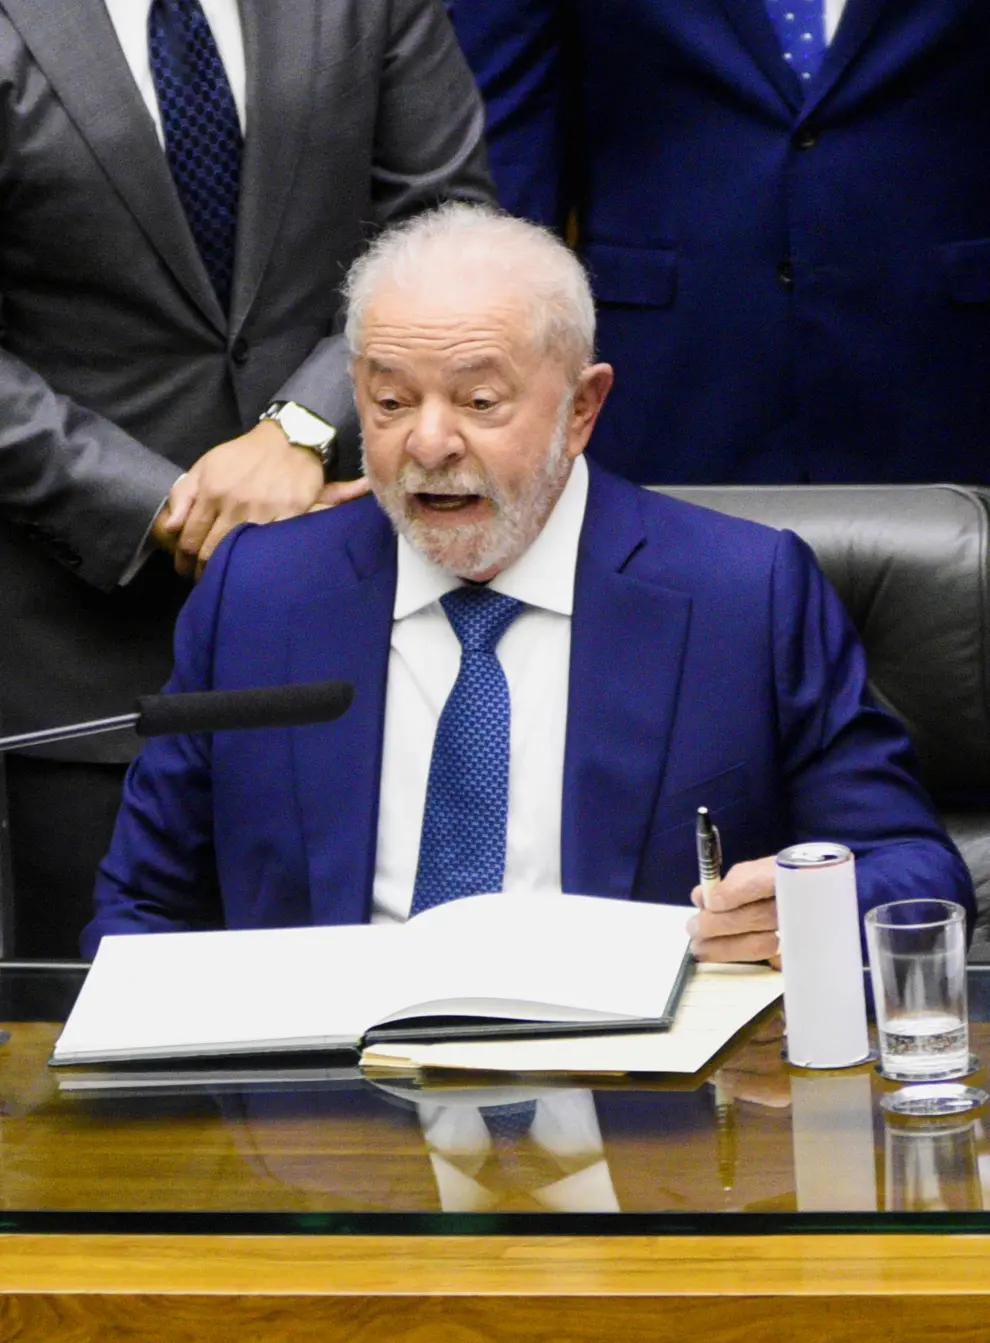 Luiz Inacio Lula da Silva takes office as Brazil's President in Brasilia